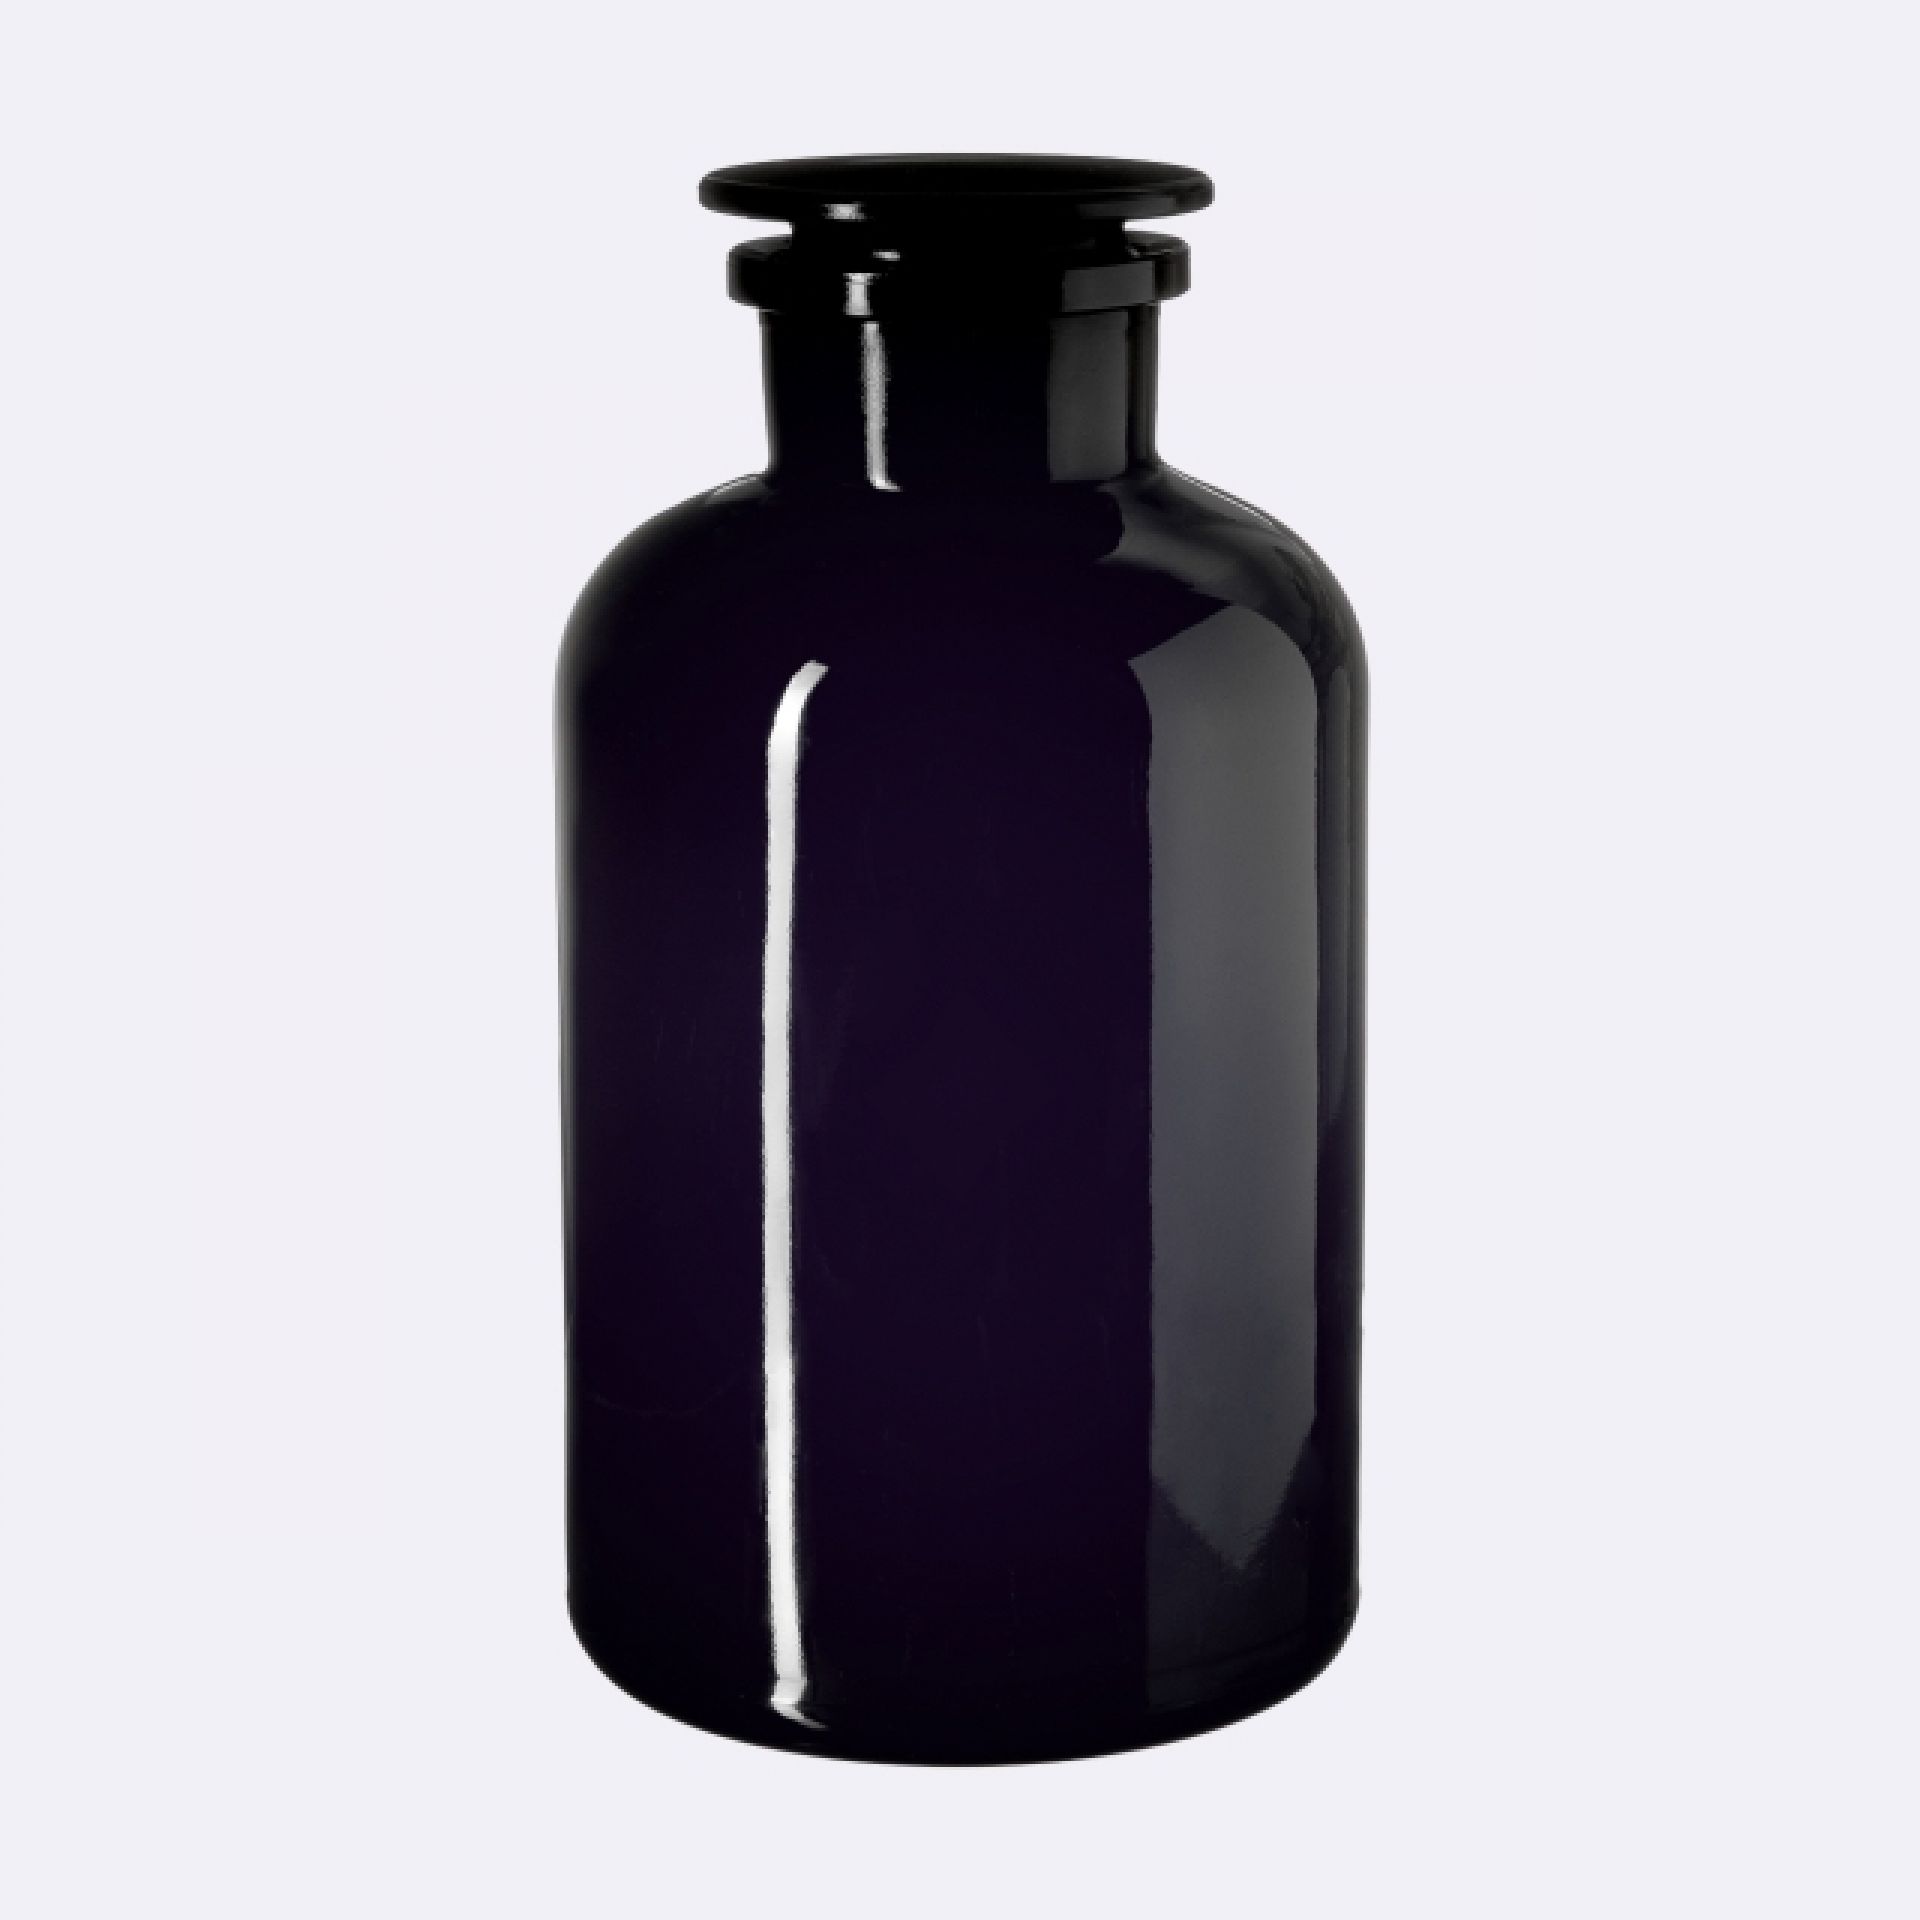 Apothecary jar Libra 2000ml, glass stopper, Miron